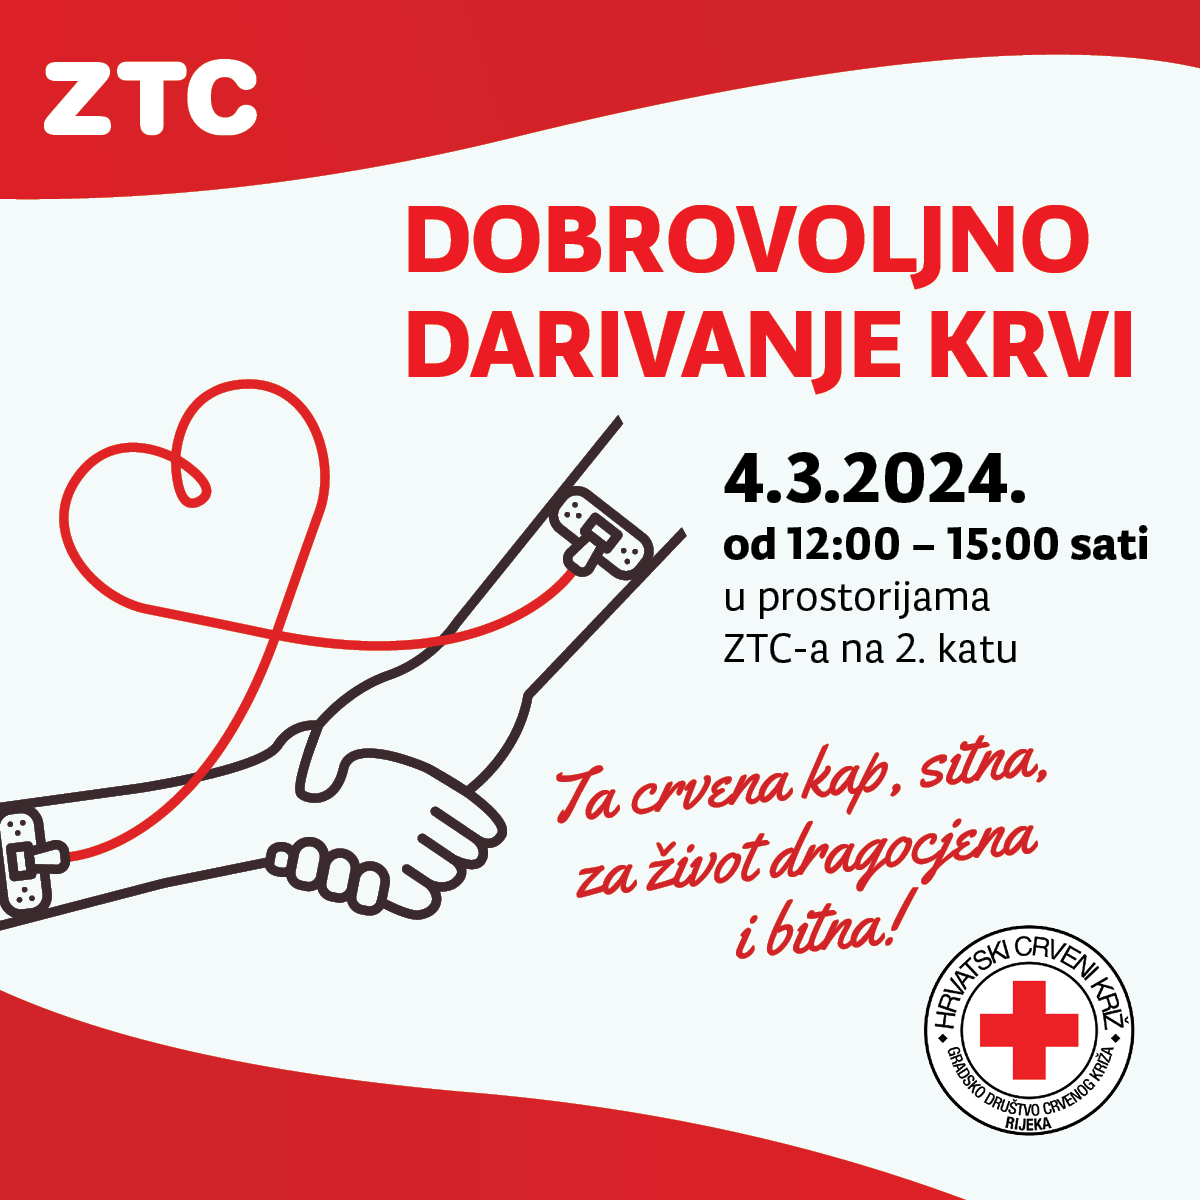 Akcija dobrovoljnog darivanja krvi u ZTC-u